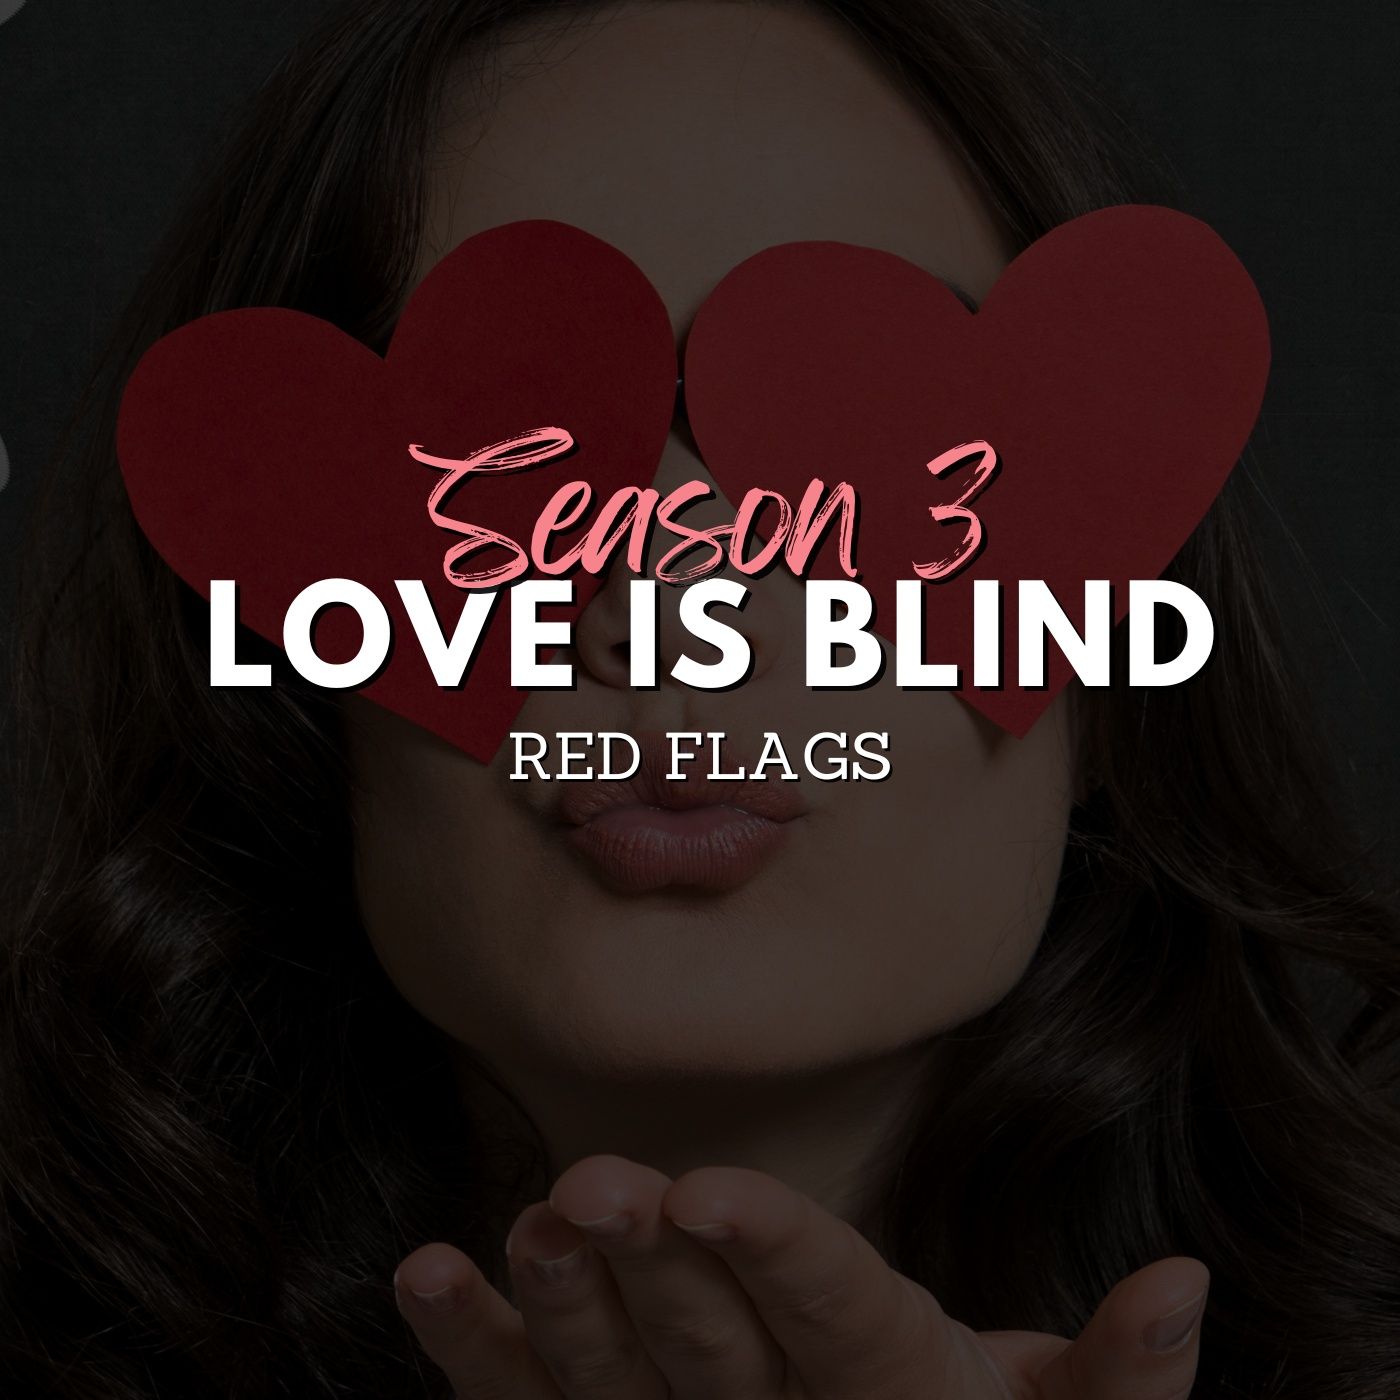 Love is Blind (Season 3) Red Flags